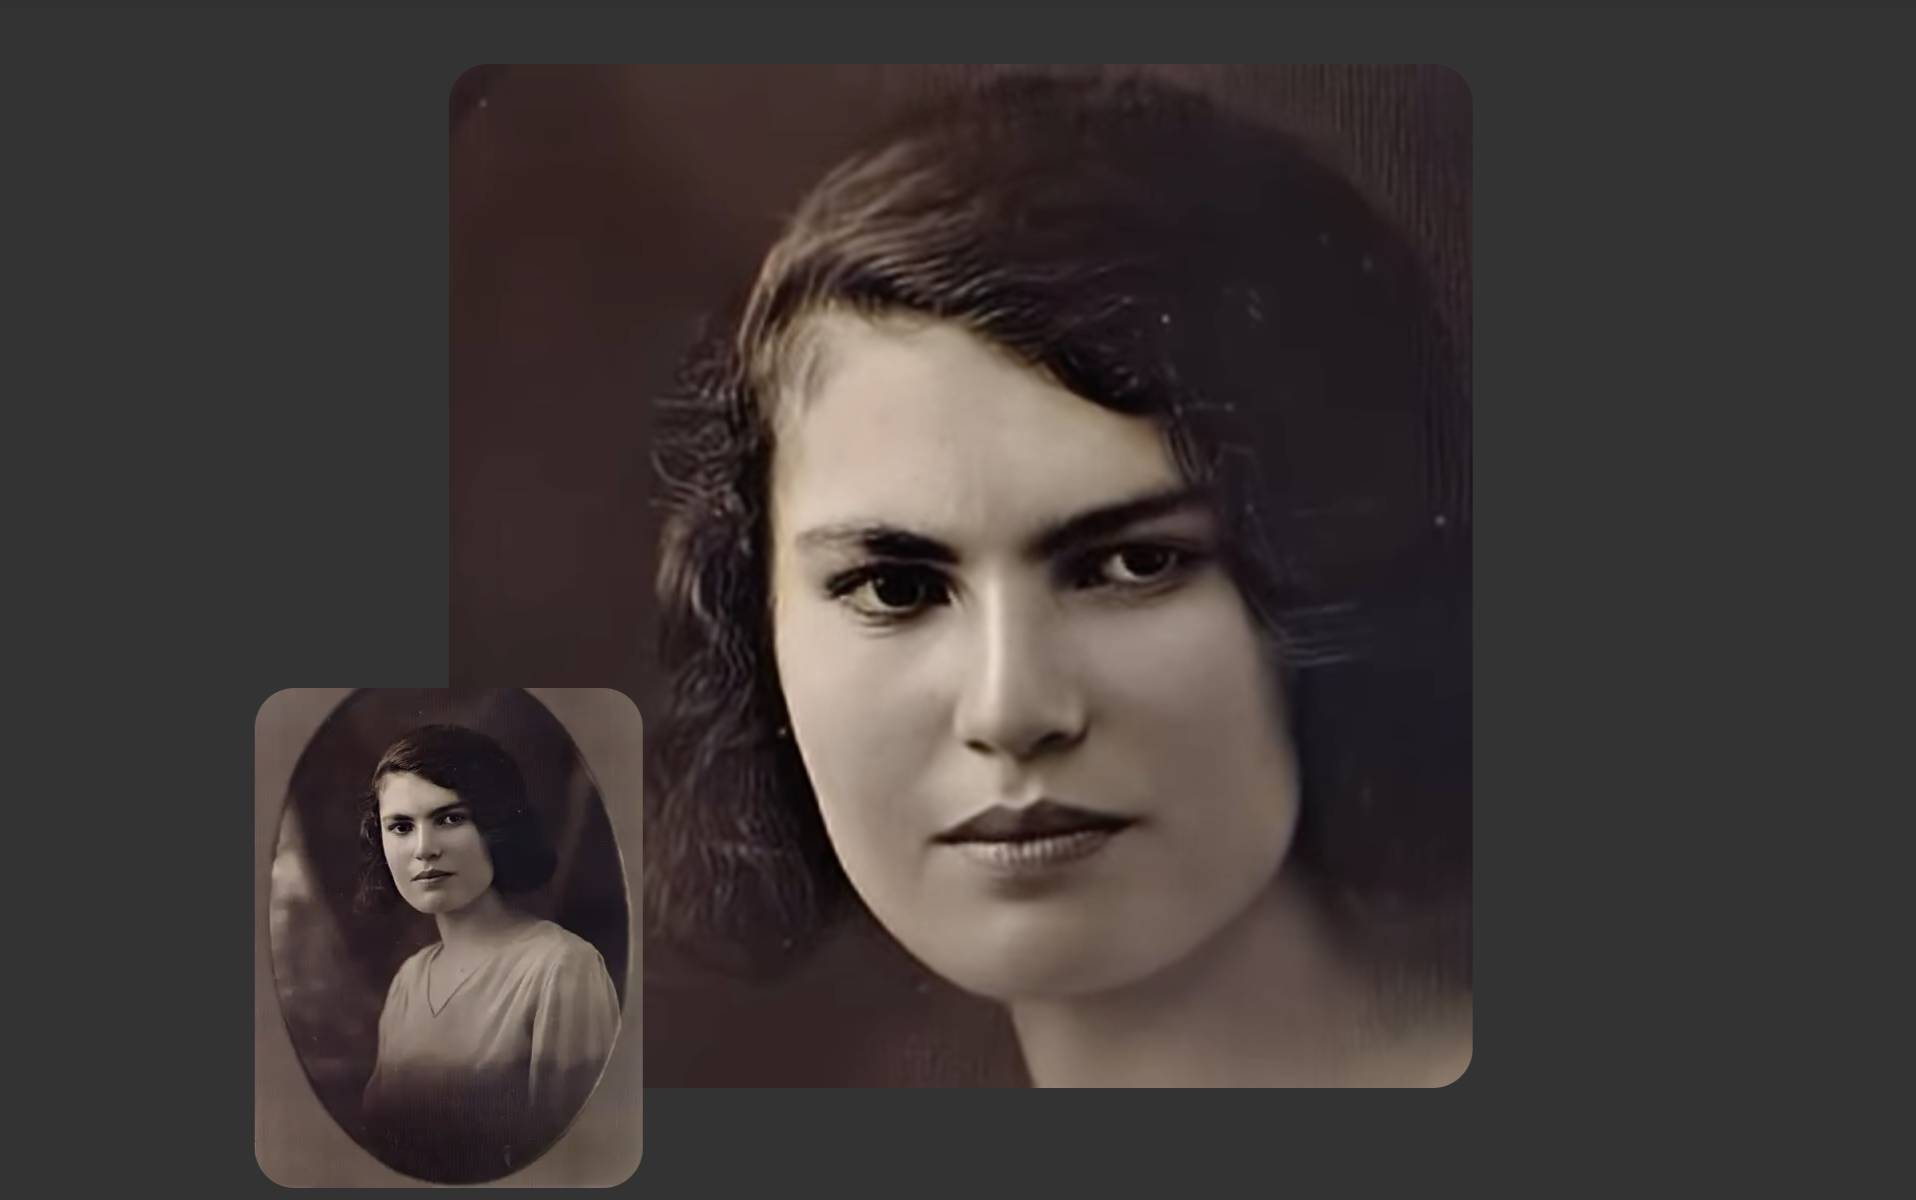 Deep Nostalgia : cette IA capable d'animer de vieux portraits fait sensation sur Internet